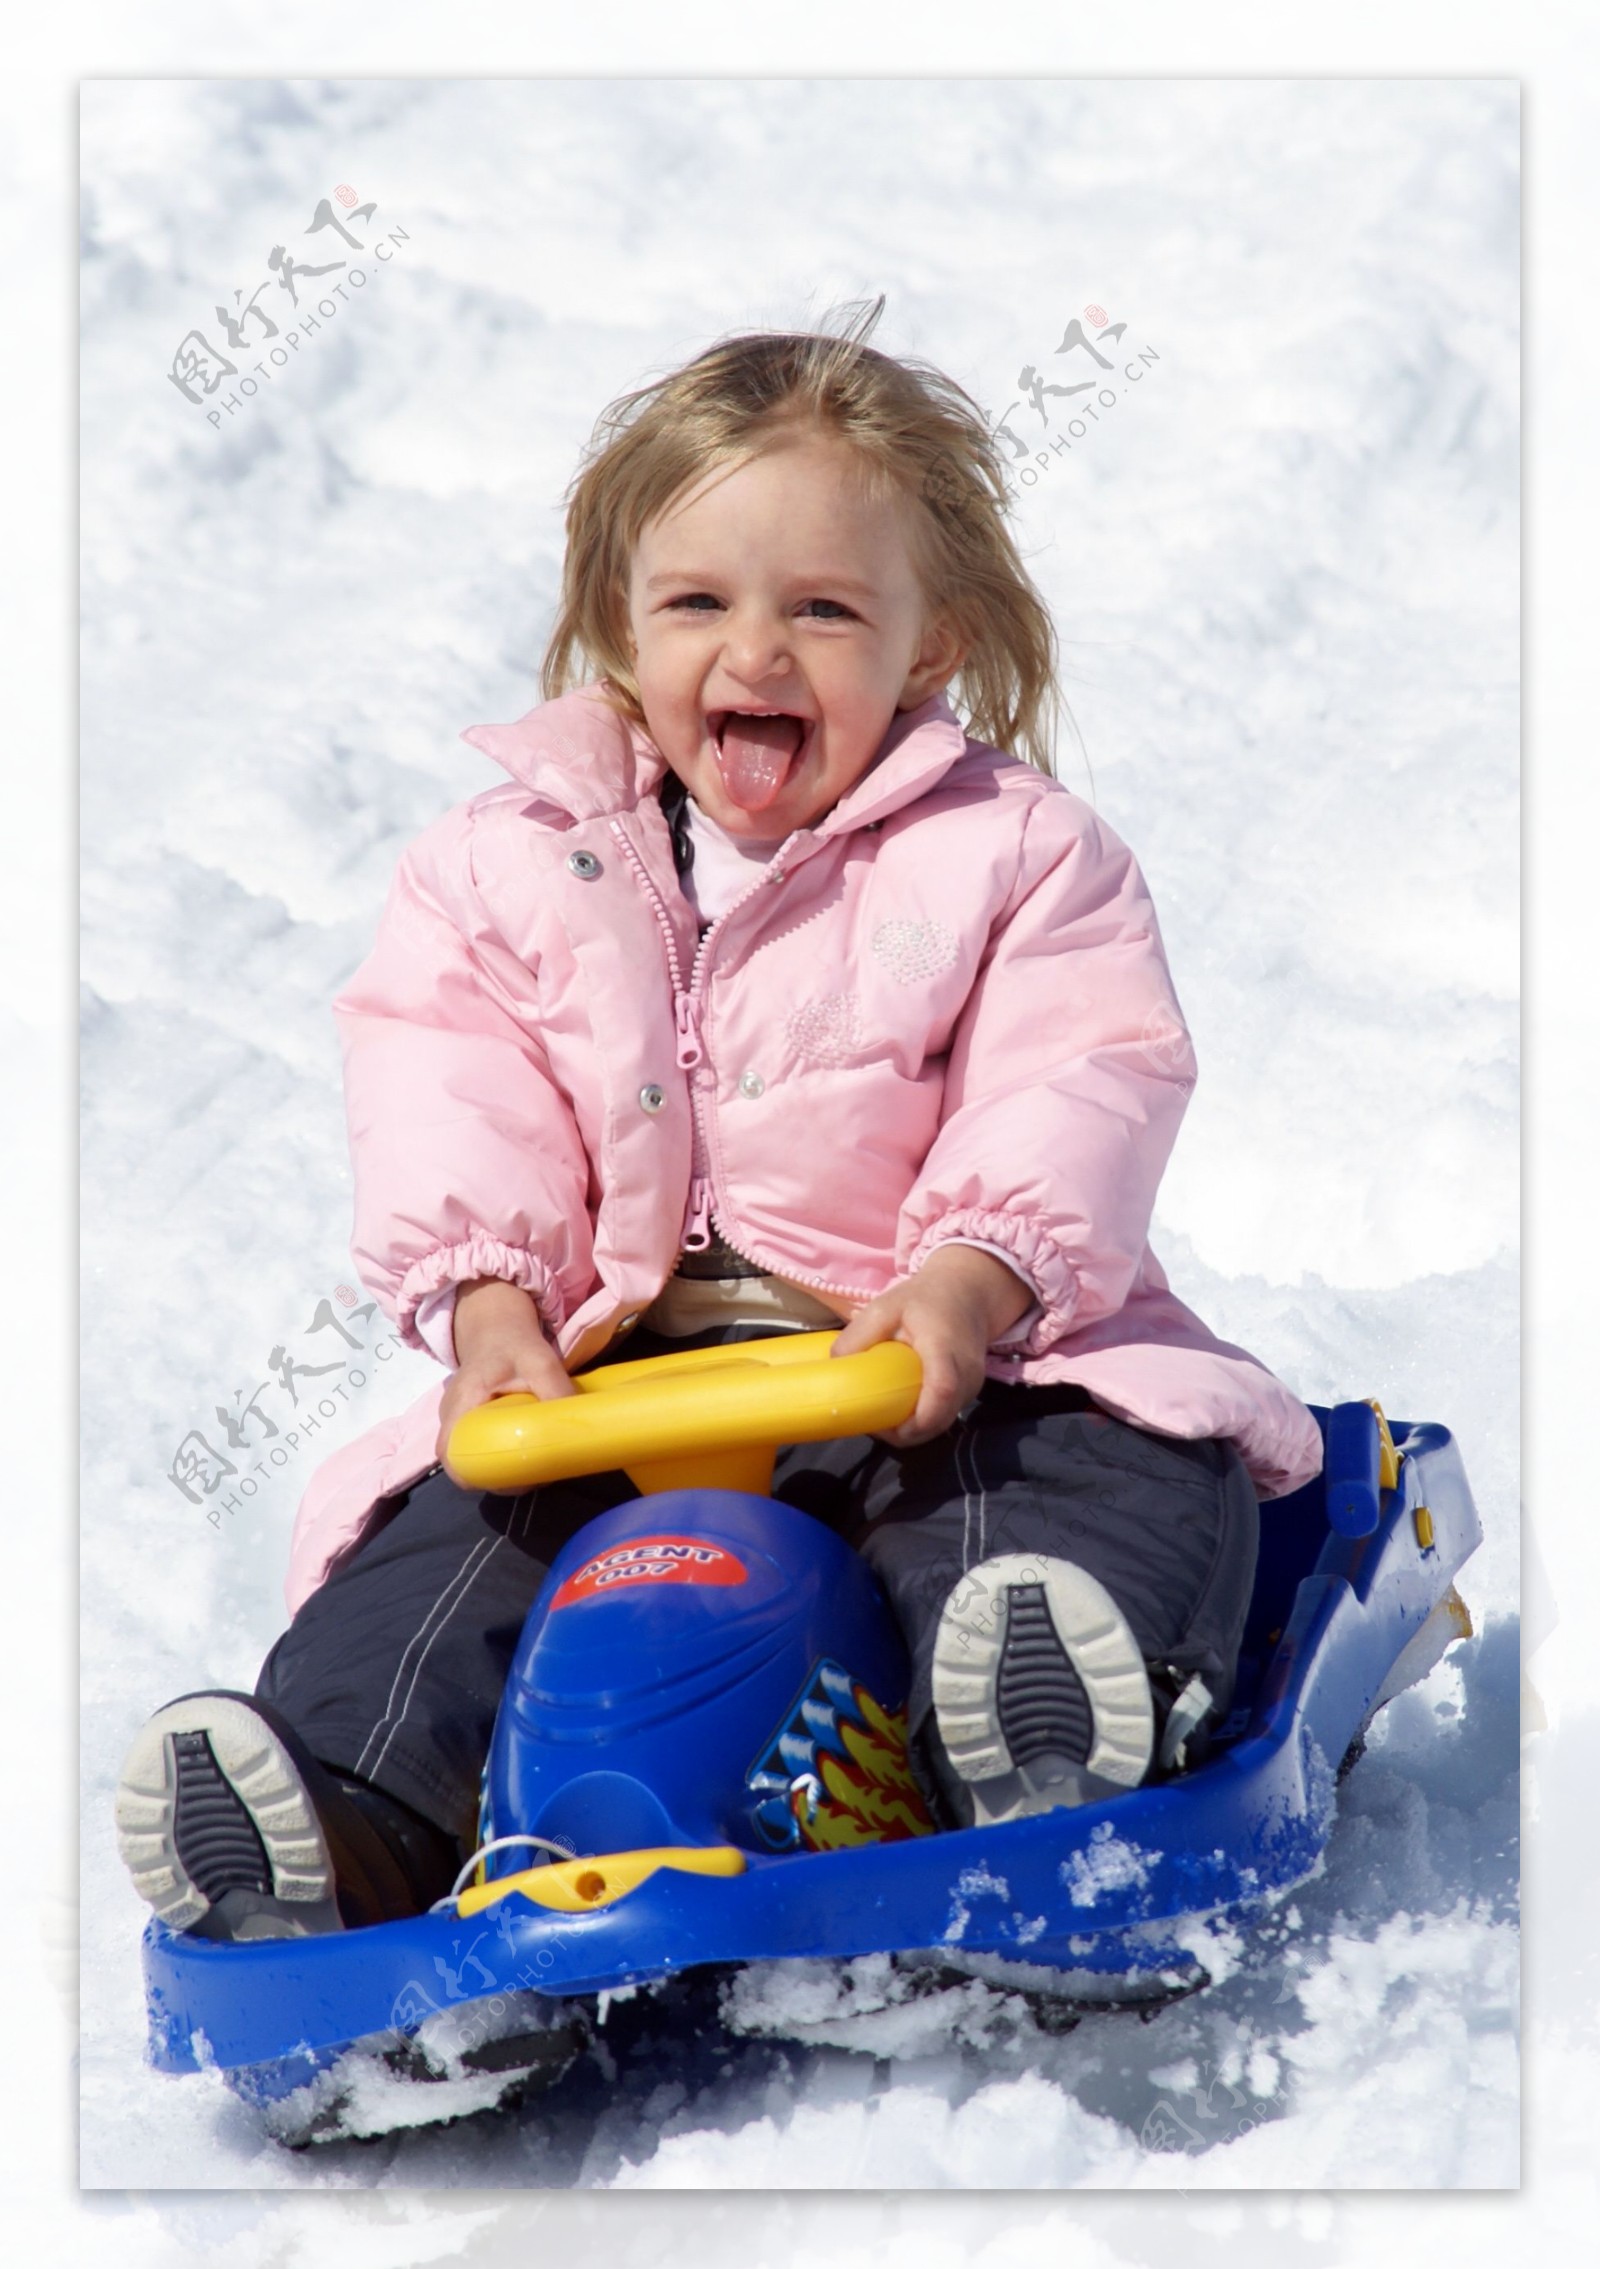 雪地开心开小车的小女孩图片